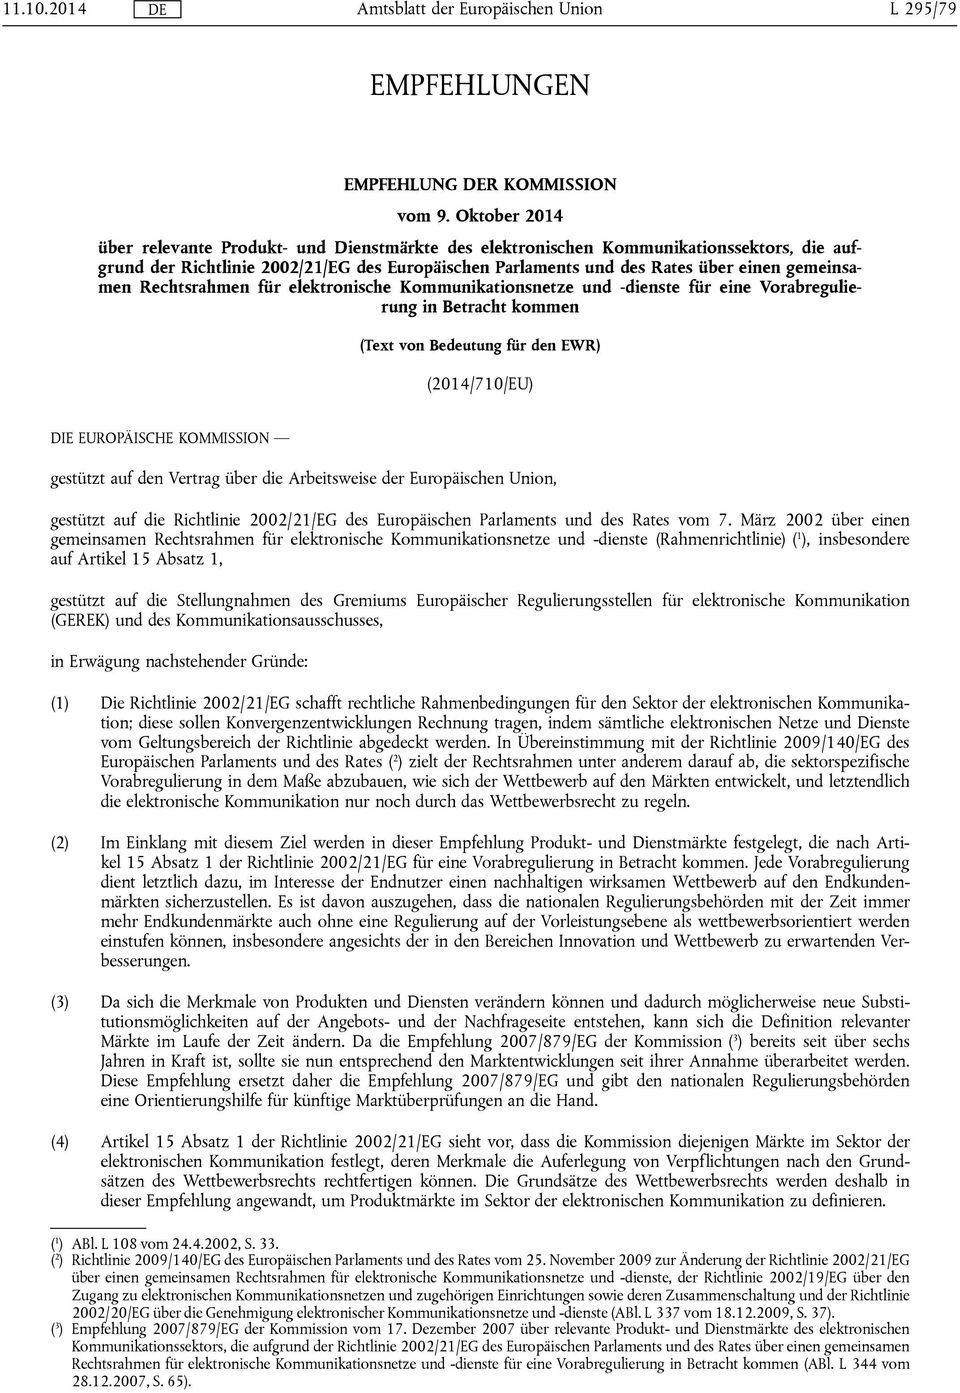 Rechtsrahmen für elektronische Kommunikationsnetze und -dienste für eine Vorabregulierung in Betracht kommen (Text von Bedeutung für den EWR) (2014/710/EU) DIE EUROPÄISCHE KOMMISSION gestützt auf den